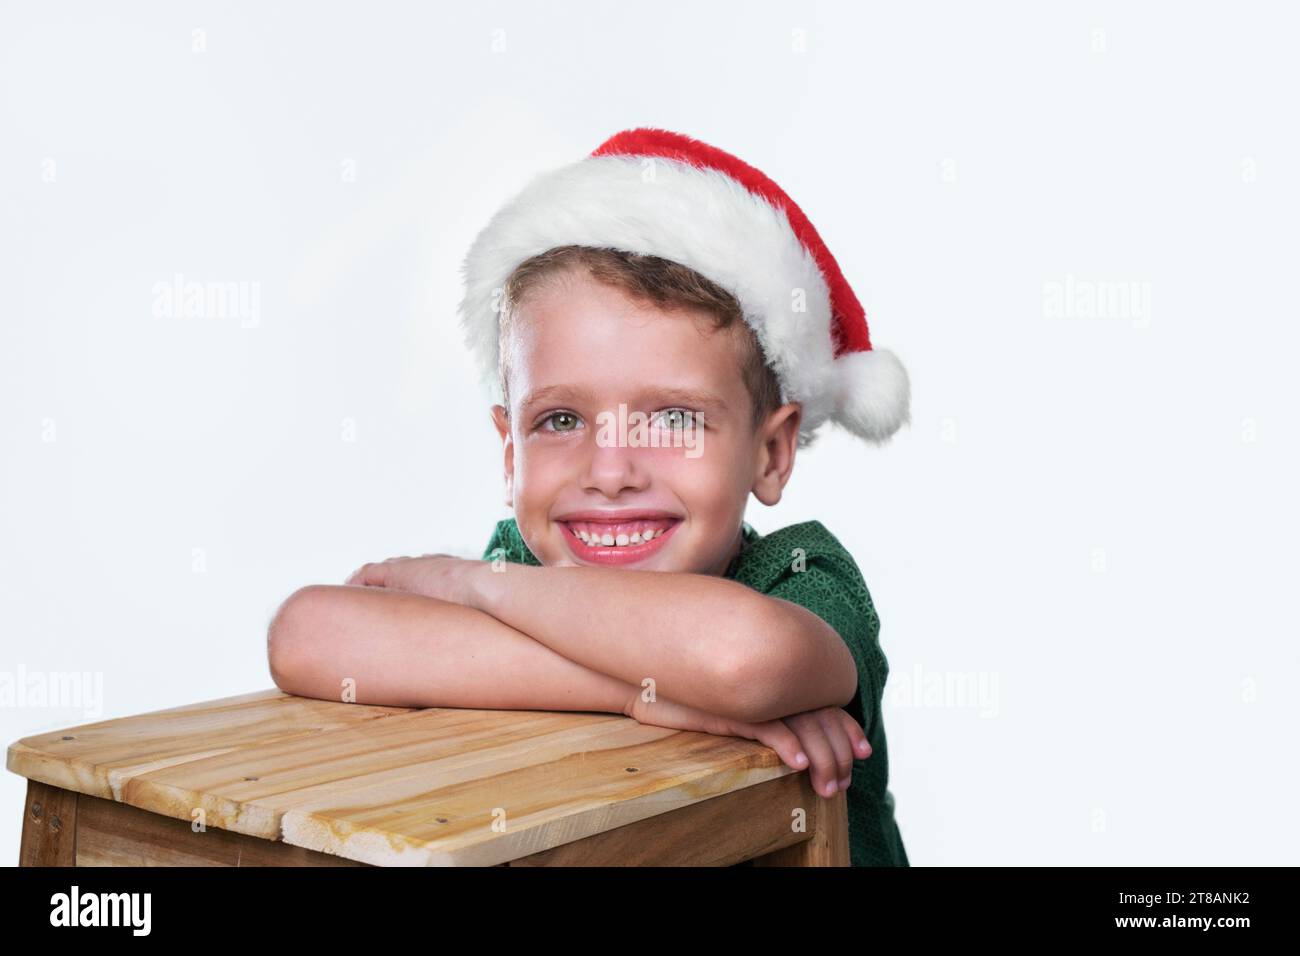 Der fünfjährige kaukasische Junge mit einem fröhlichen Lächeln im Gesicht, der in die Kamera schaut, liegt mit gefalteten Armen auf einem Holztisch Stockfoto